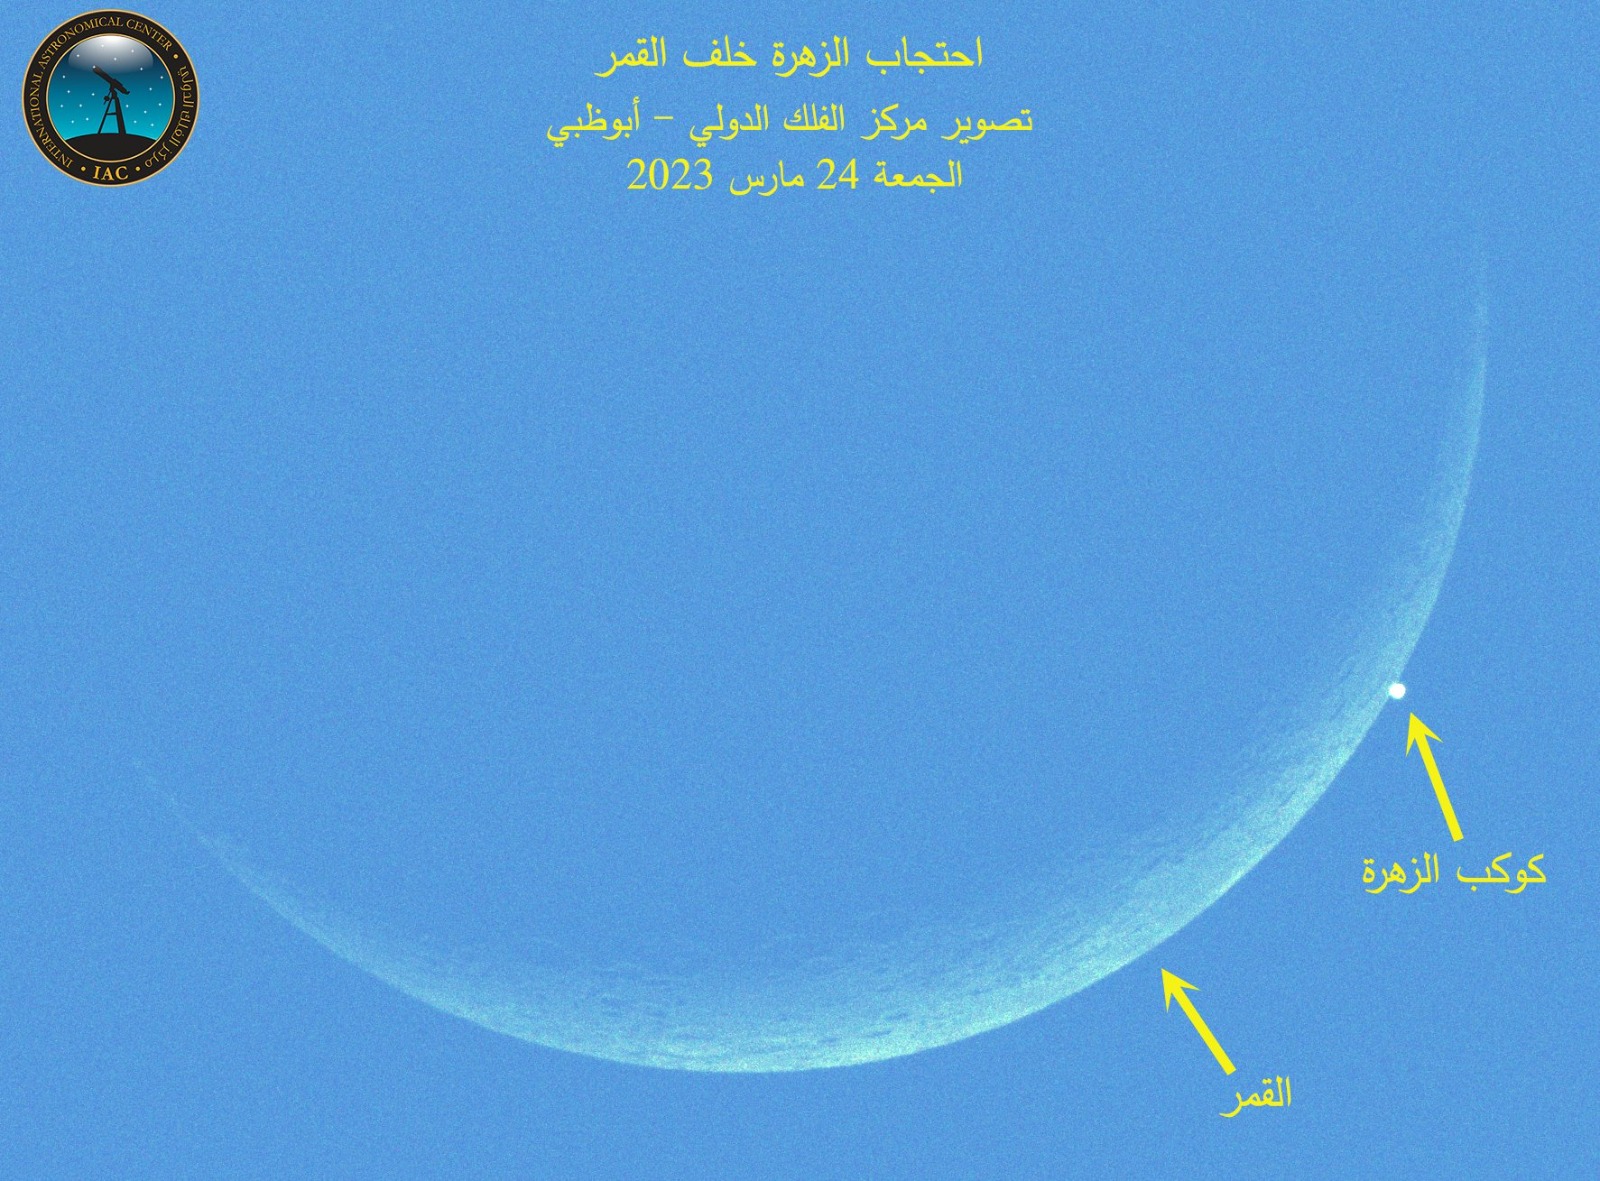 رصد ظاهرة احتجاب كوكب الزهرة النير خلف قرص القمر في سماء الإمارات